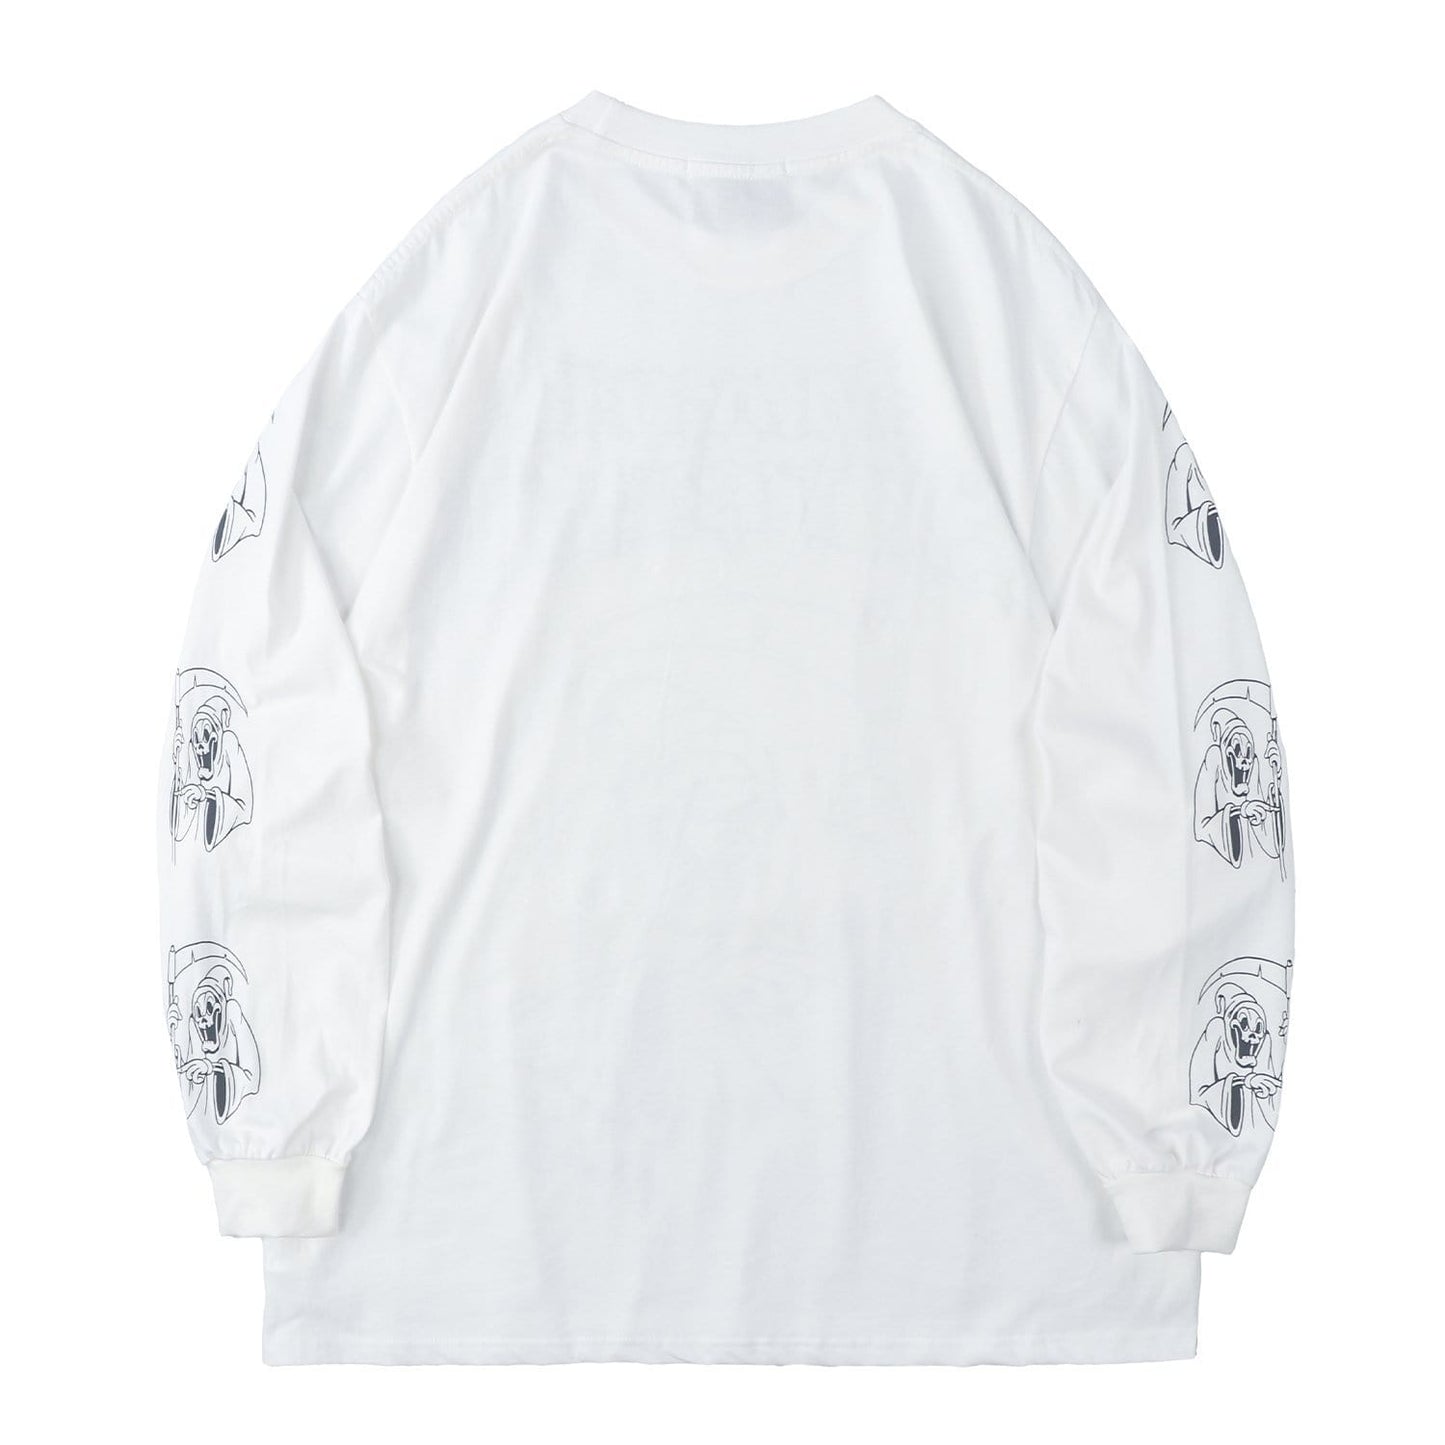 Devil Ghost Print Sweatshirt Streetwear Brand Techwear Combat Tactical YUGEN THEORY